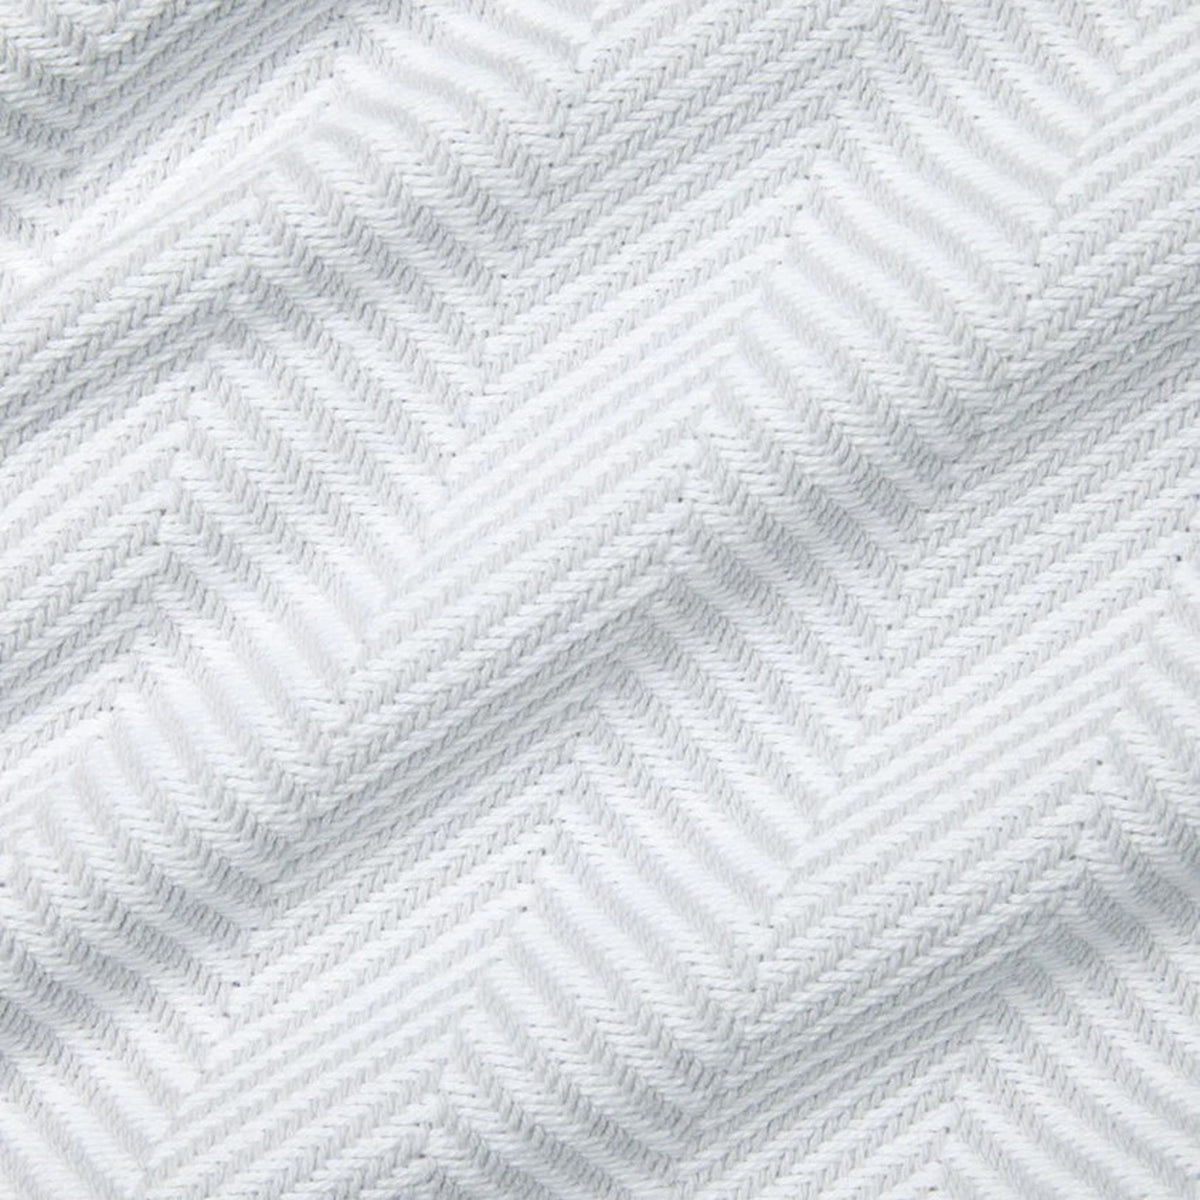 Swatch Sample of Sferra Camilo Blanket in White/Tin